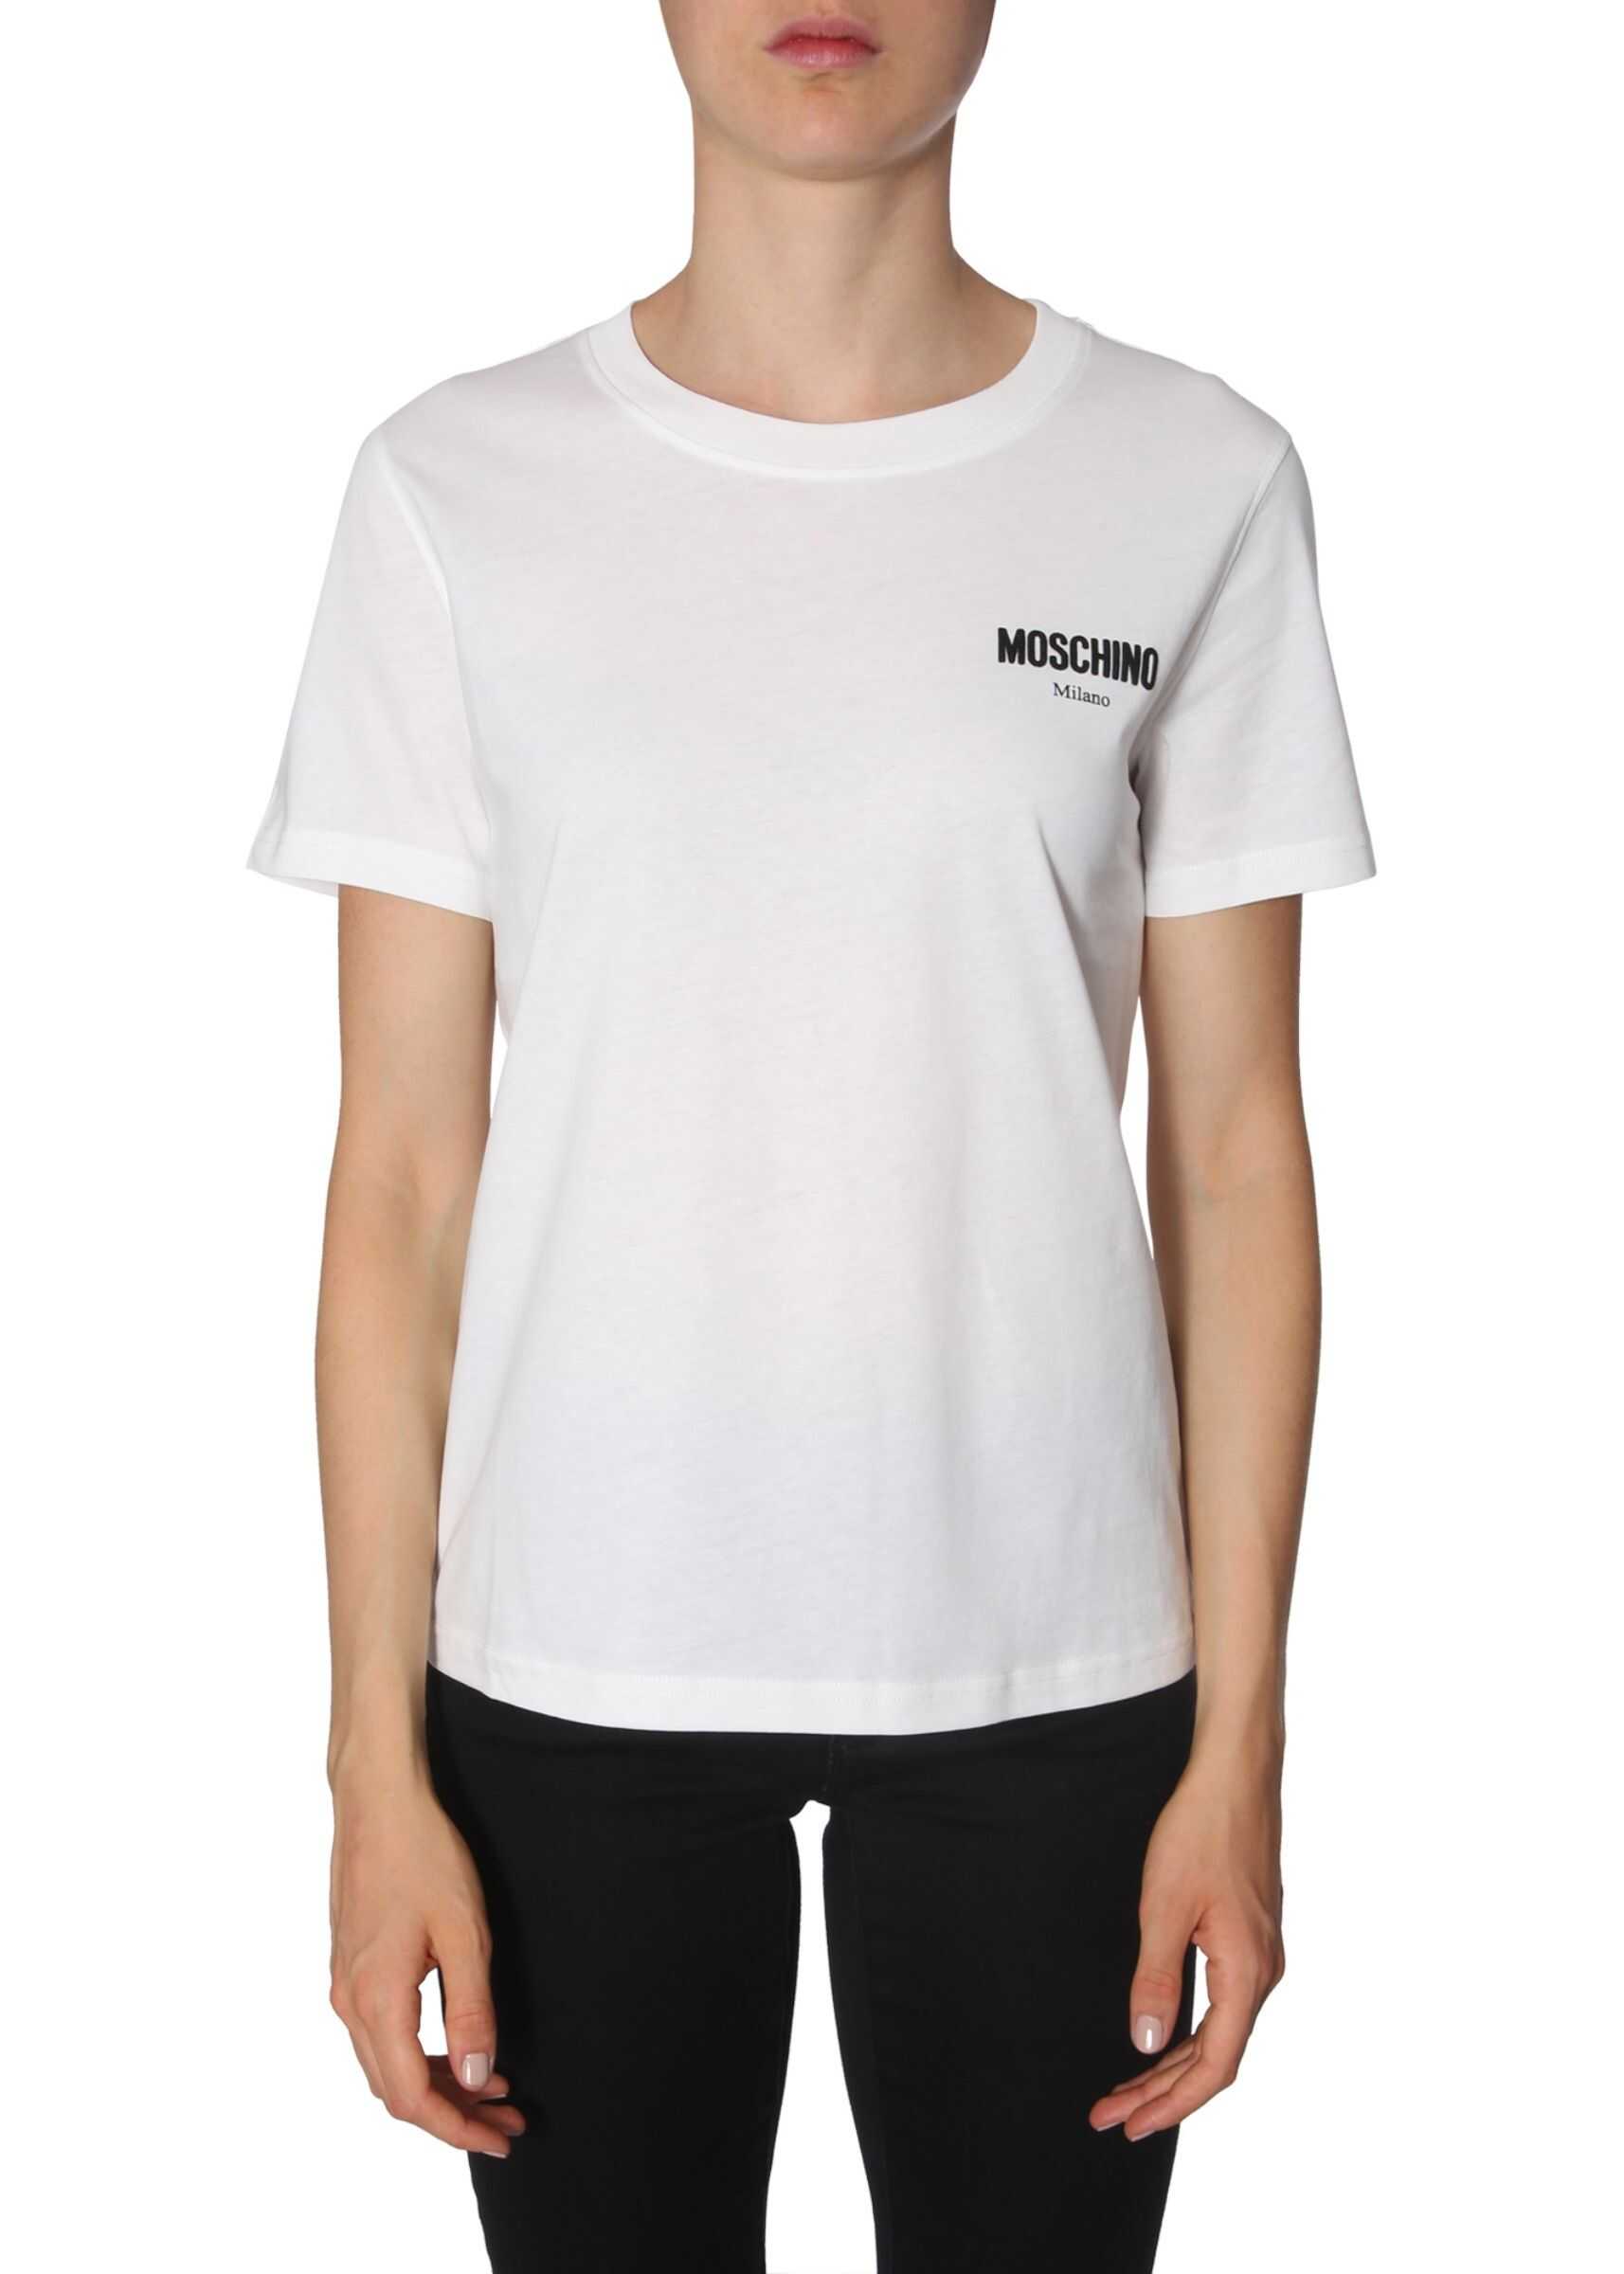 Moschino Round Neck T-Shirt WHITE